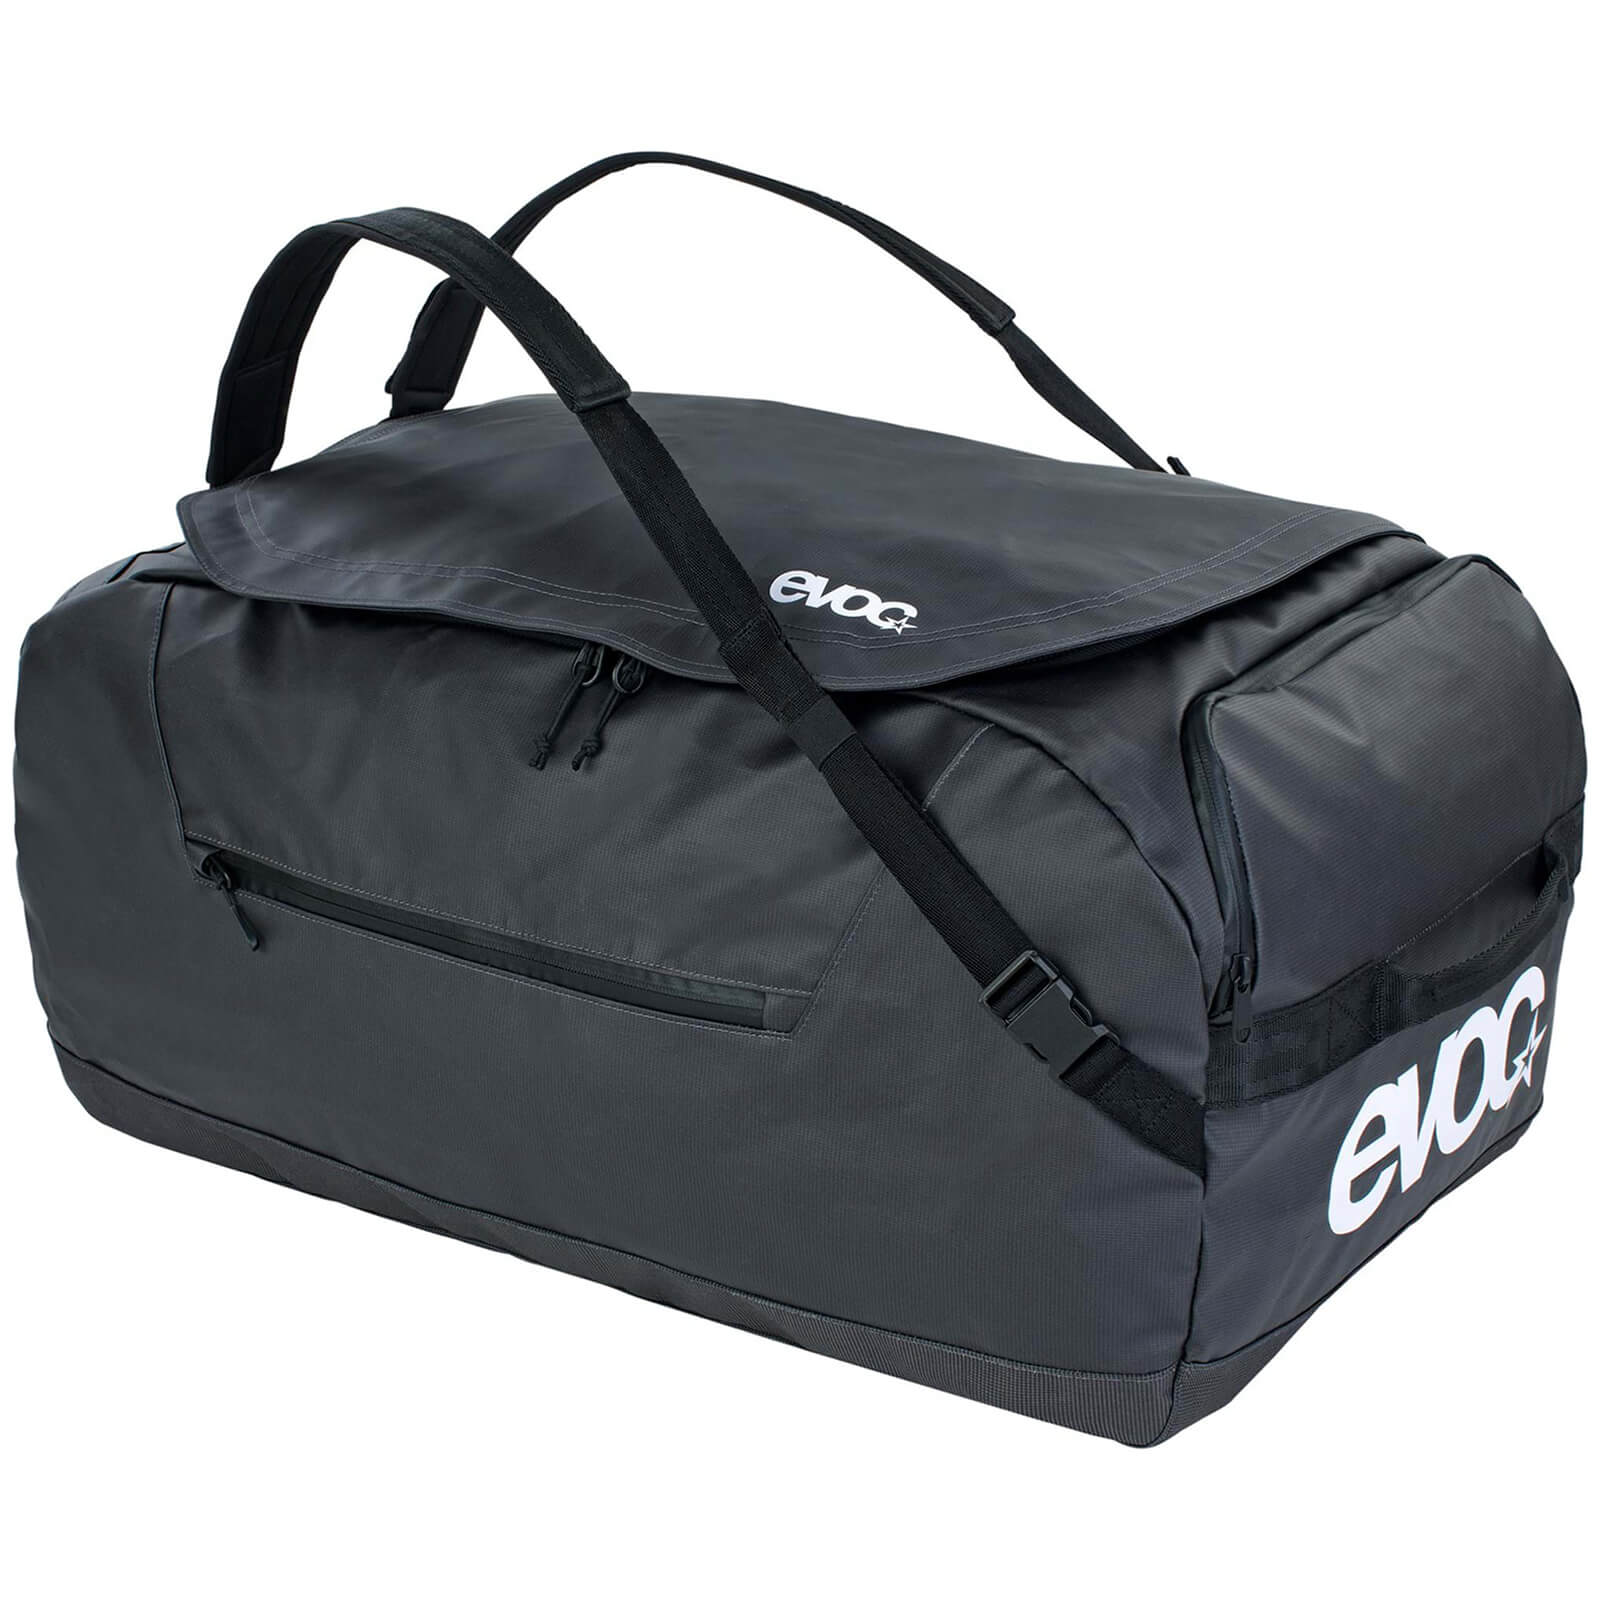 Evoc 100L Duffle Bag - Carbon Grey/Black